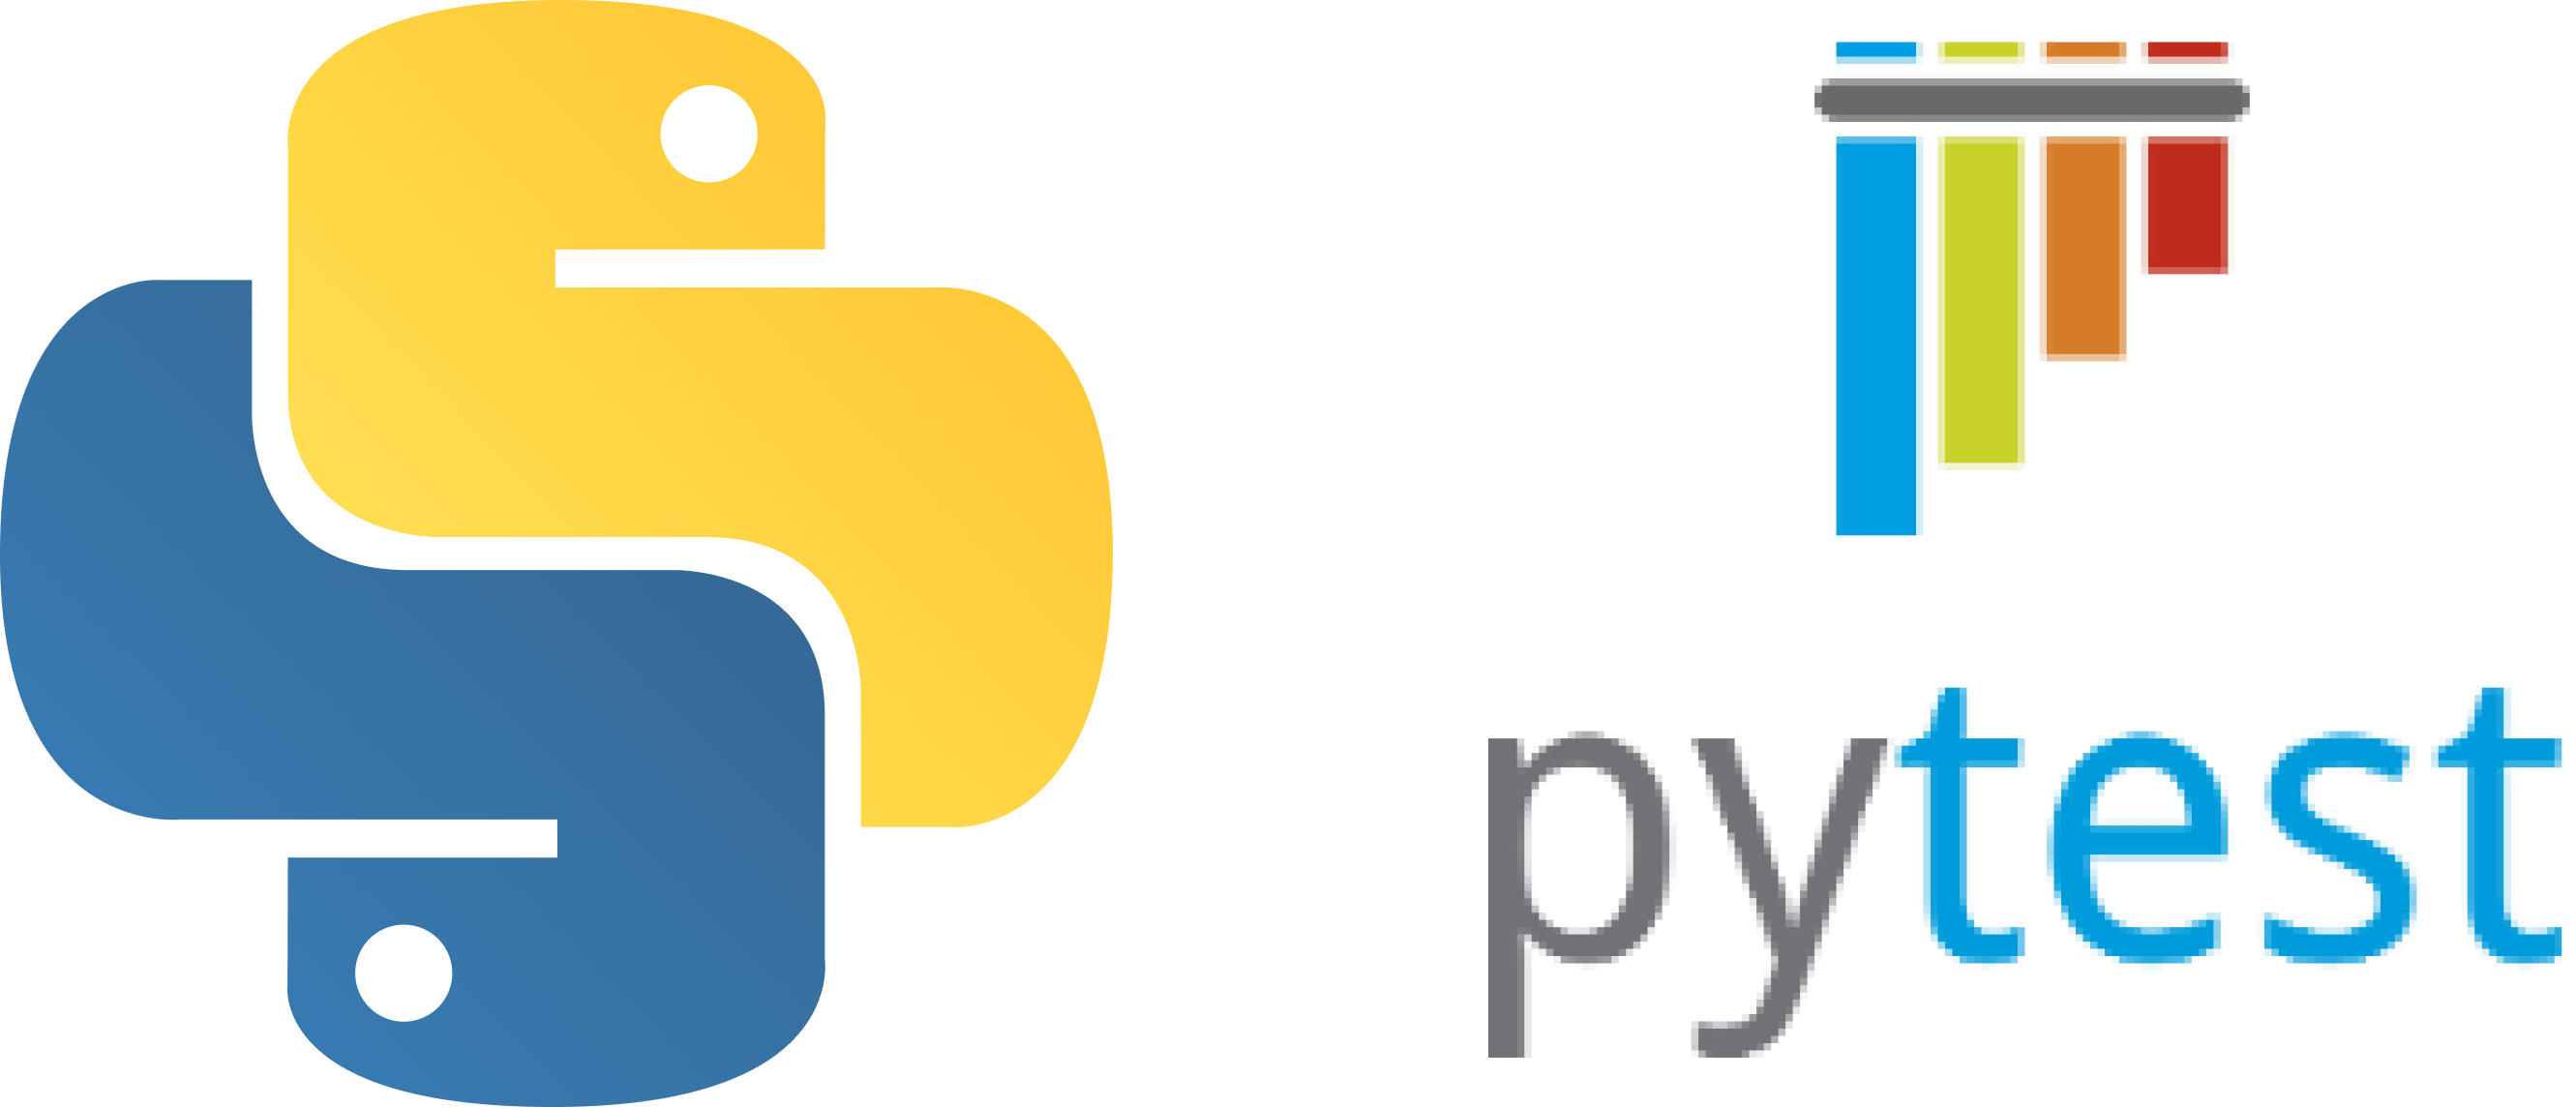 hypothesis python vs pytest